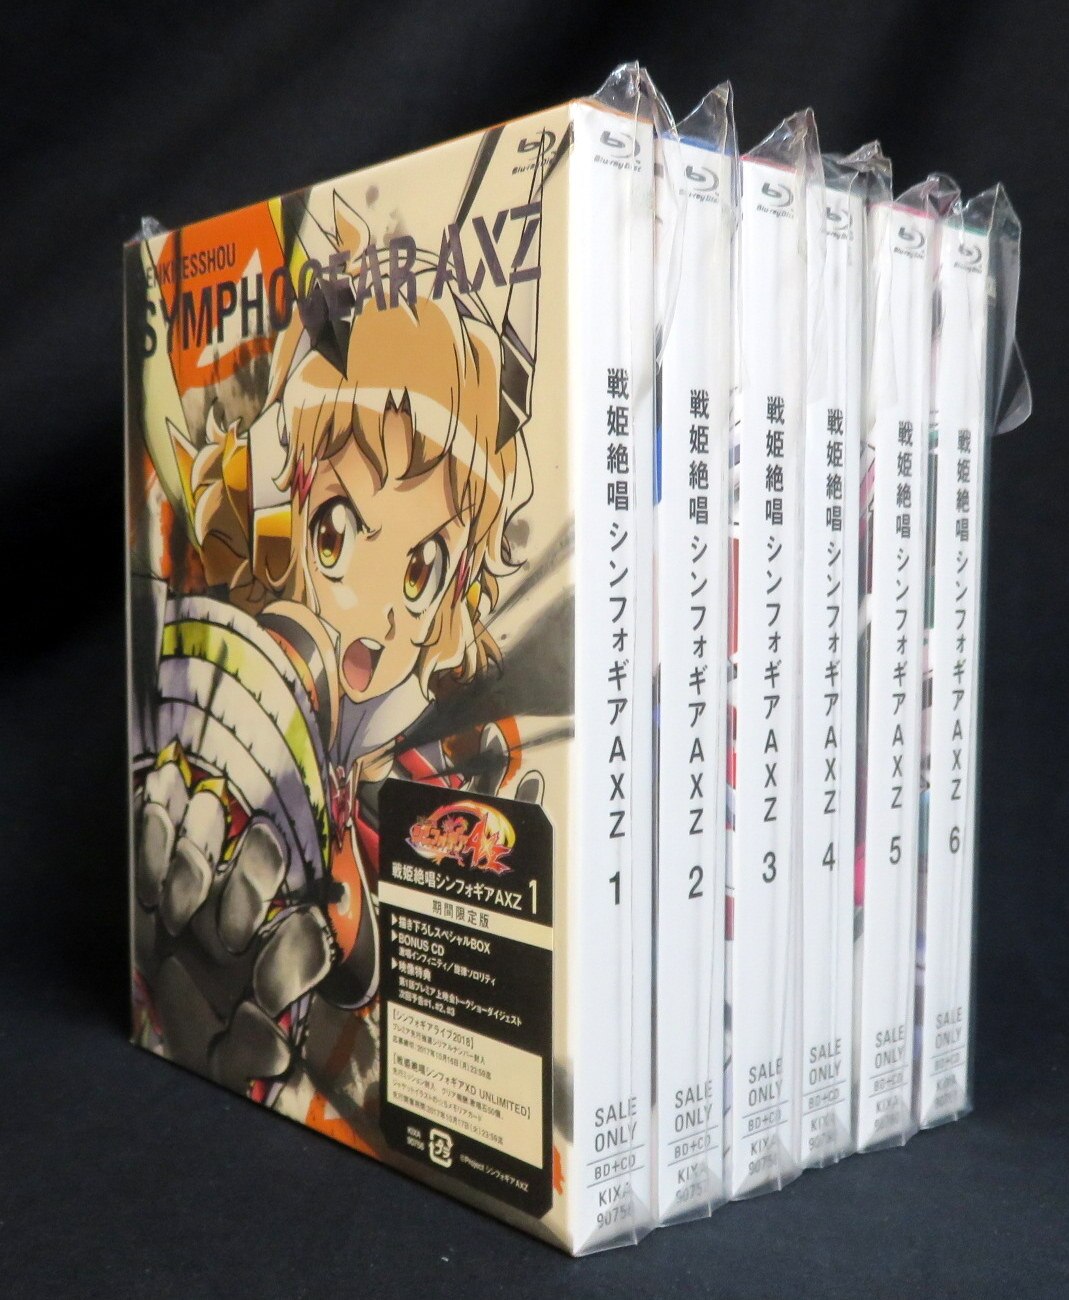 お気に入り】 戦姫絶唱シンフォギアAXZ Blu-ray 限定版 DVD/ブルーレイ 全6巻セット Ryuukou ni